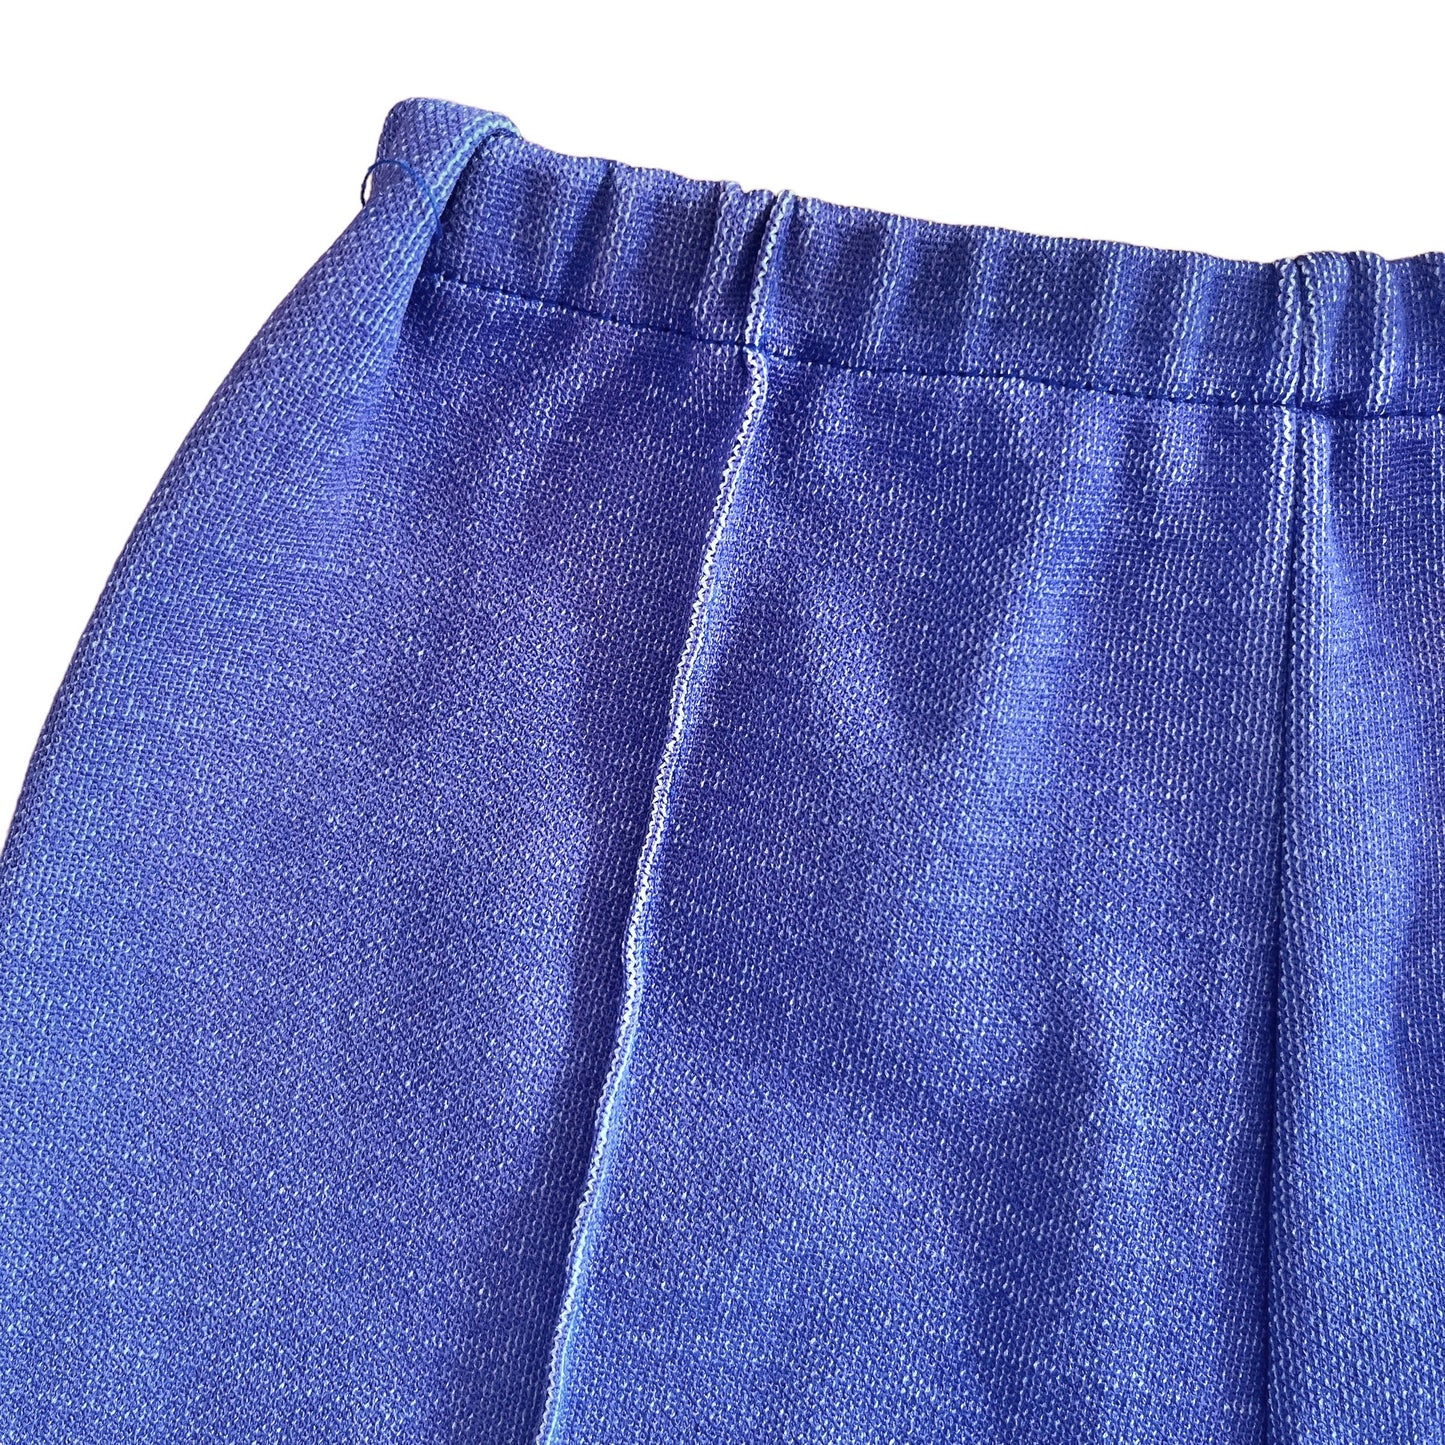 Vintage 1960's Blue Shorts / 3-4Y